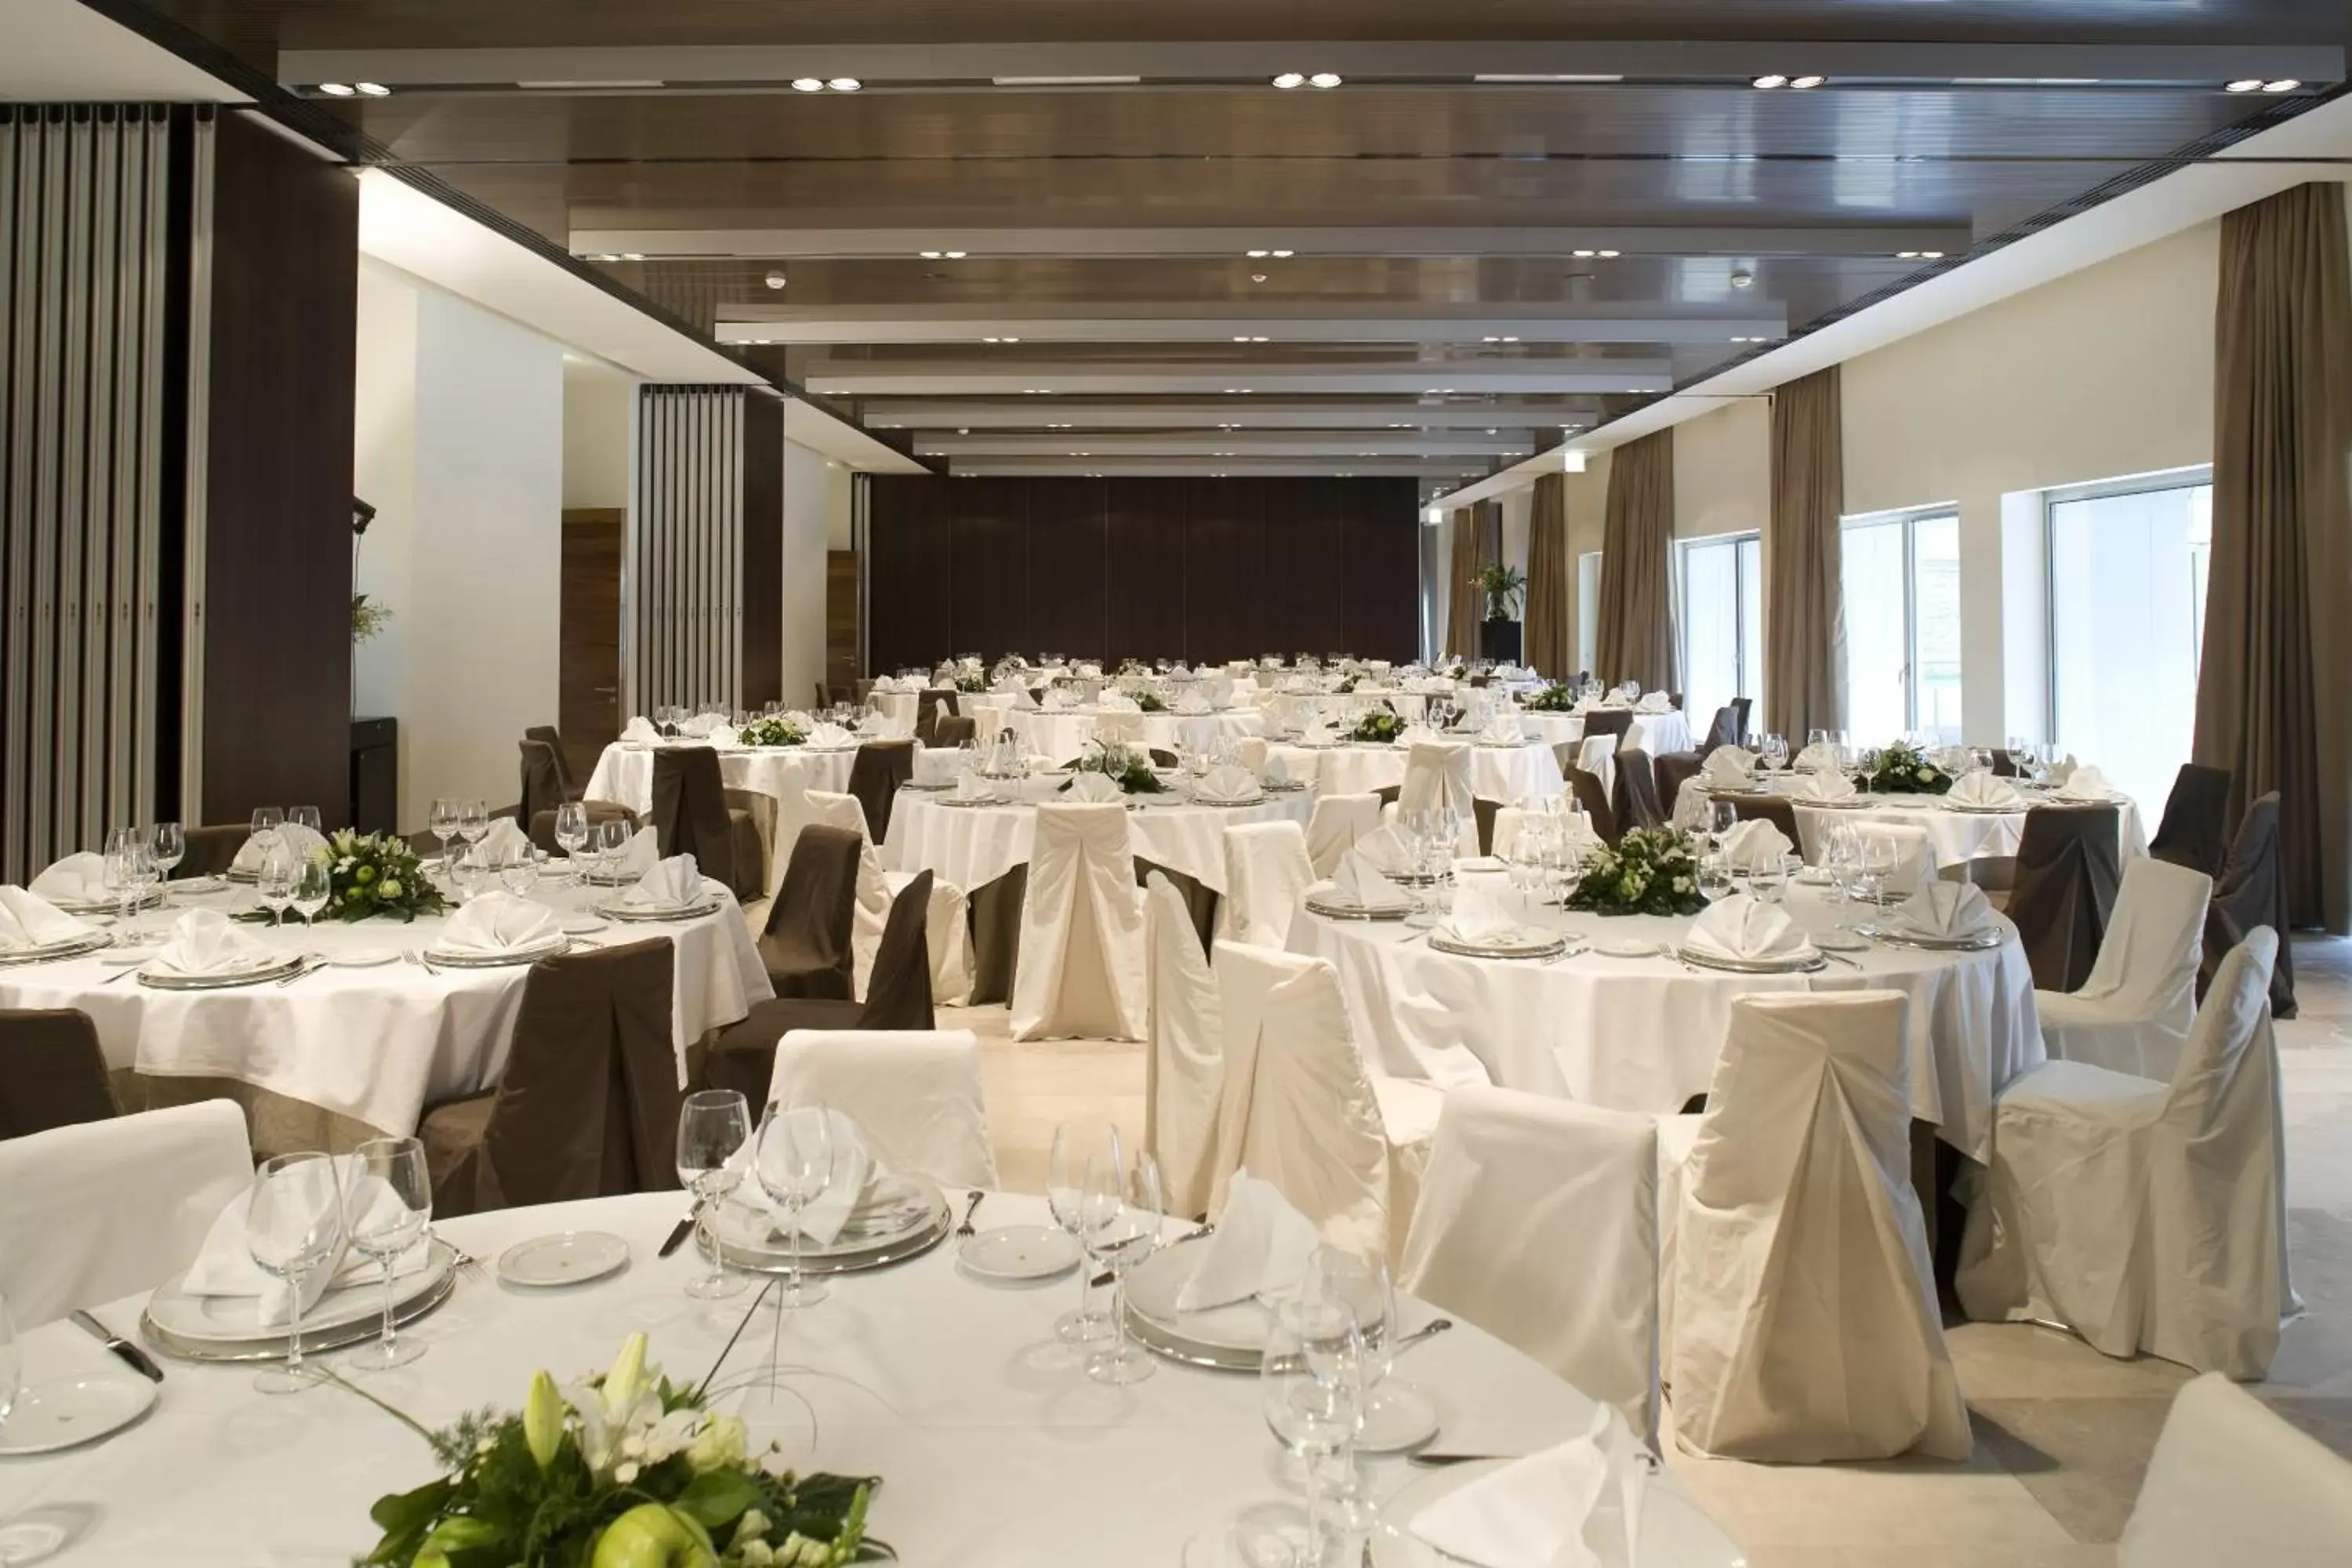 Banquet/Function facilities, Banquet Facilities in Parador de Alcalá de Henares